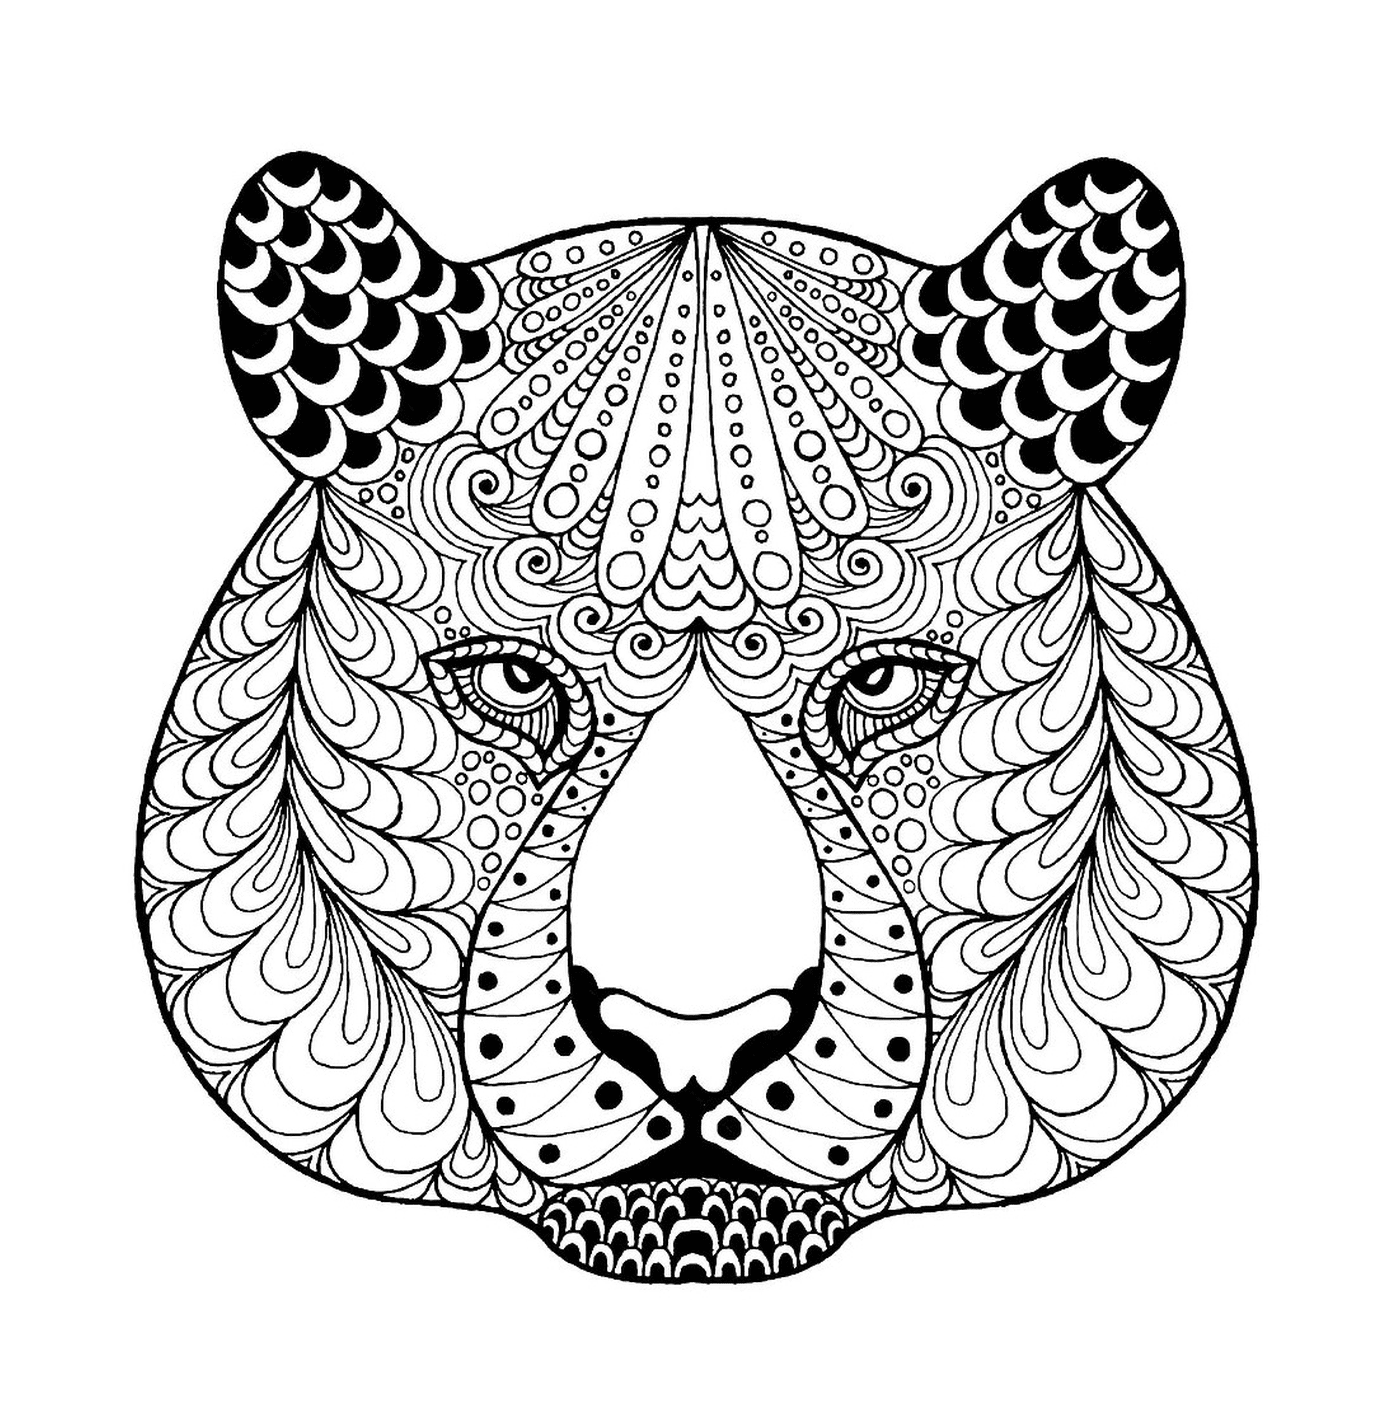  Ein Zentangle Tiger Kopf mit Mustern 